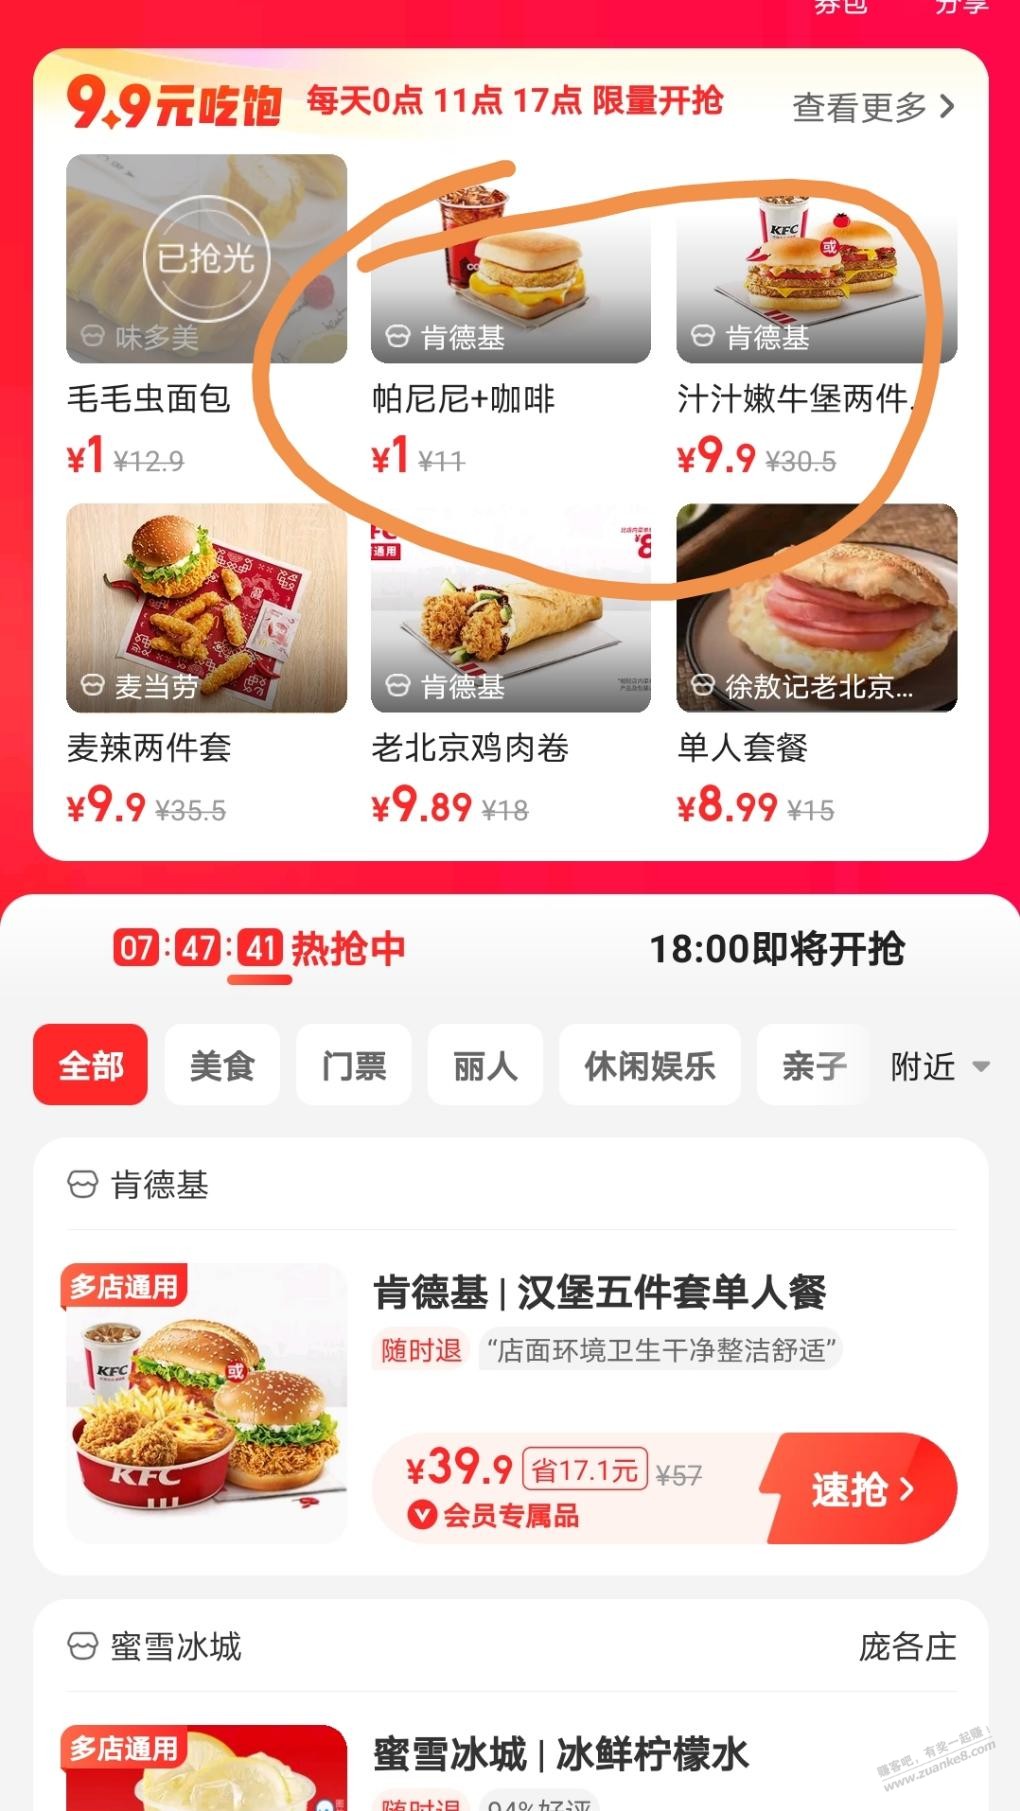 美团定位北京-有特价团购-1元肯德基早餐